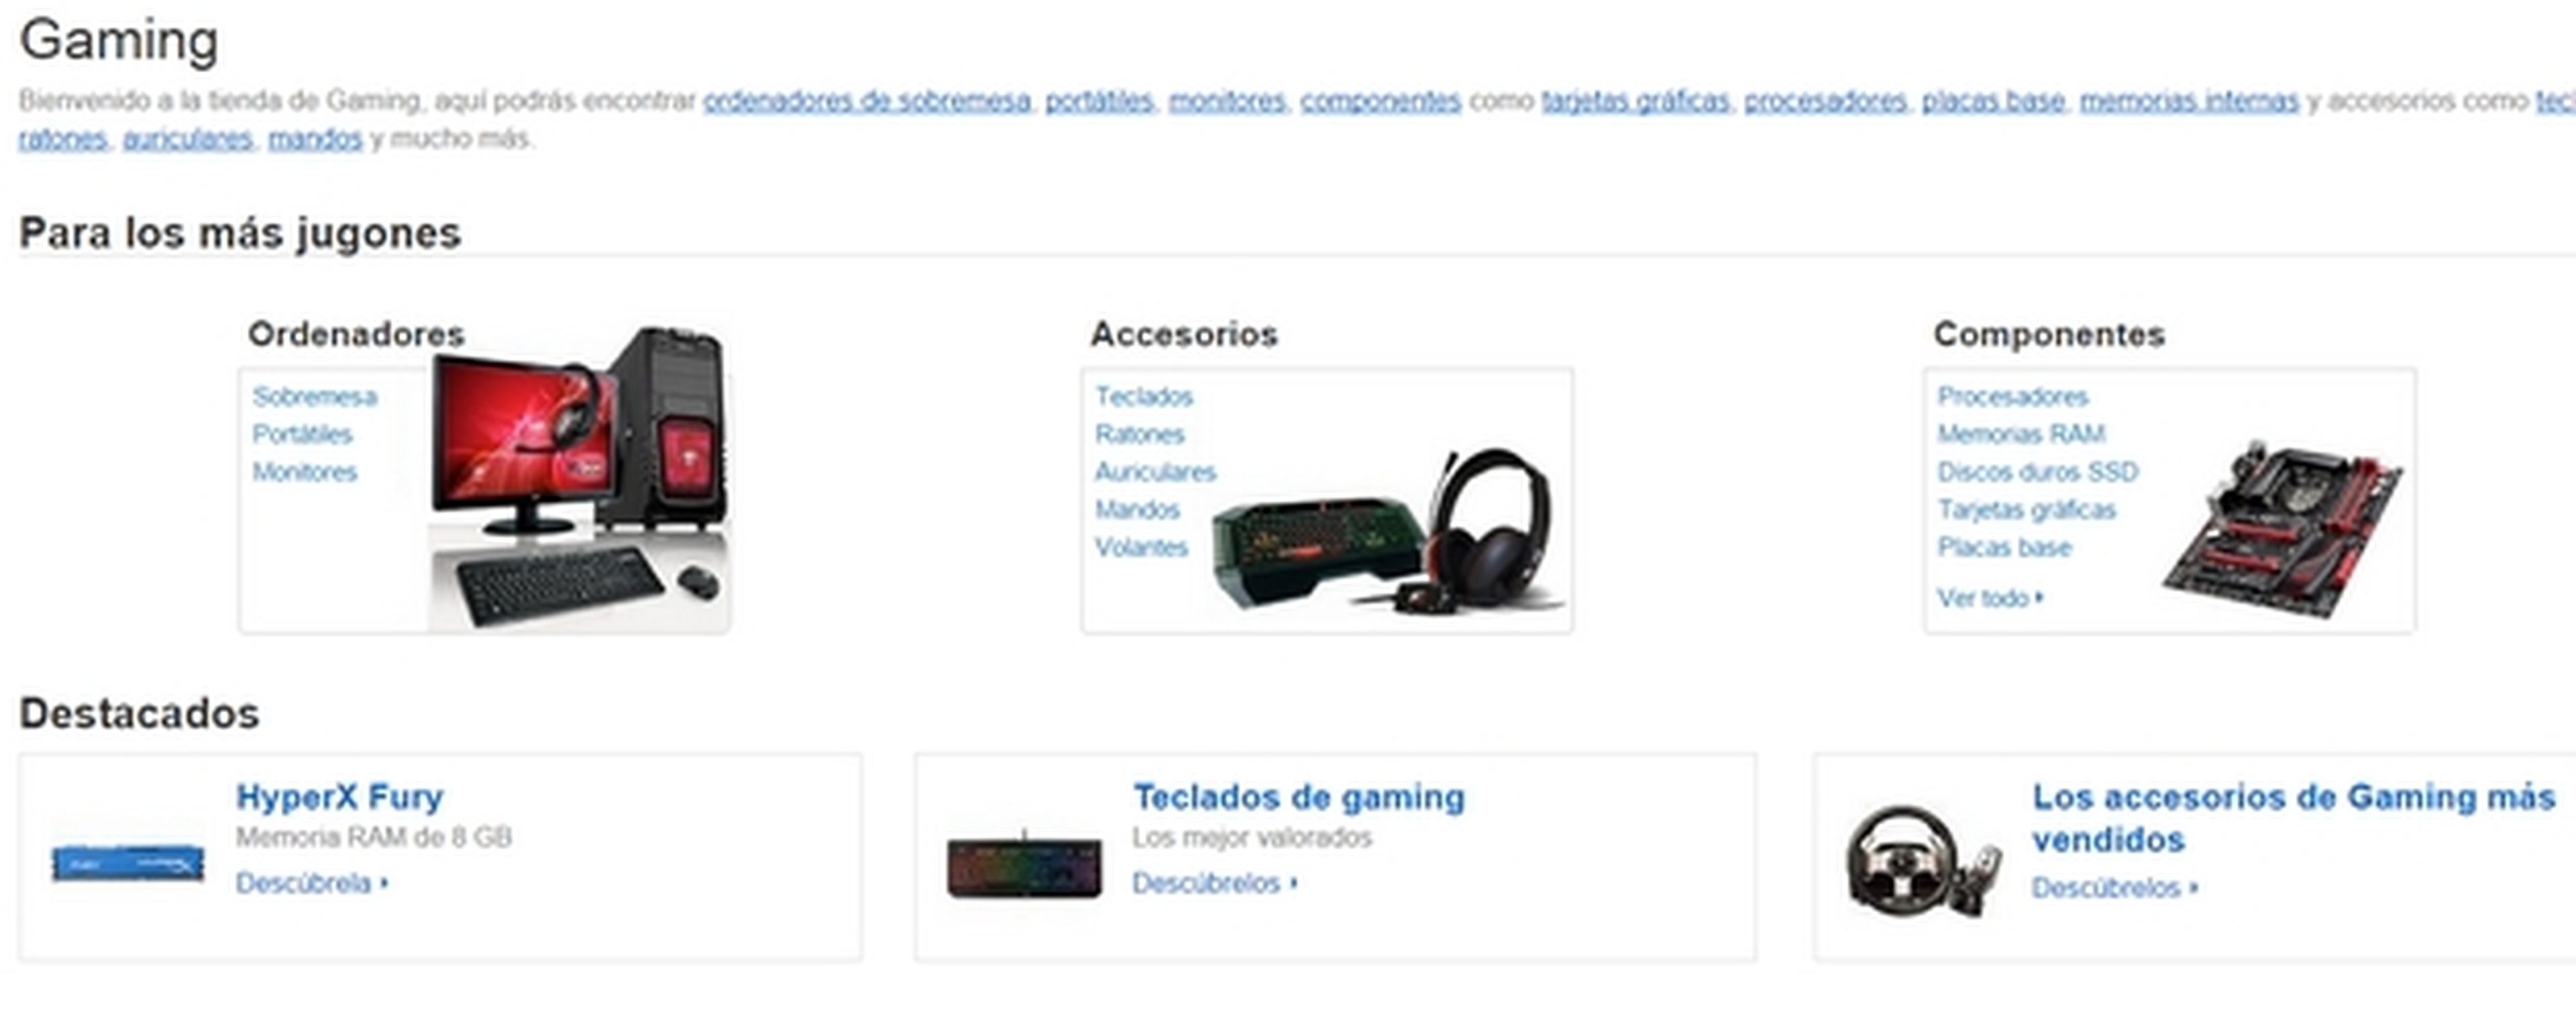 Tienda Gaming Amazon